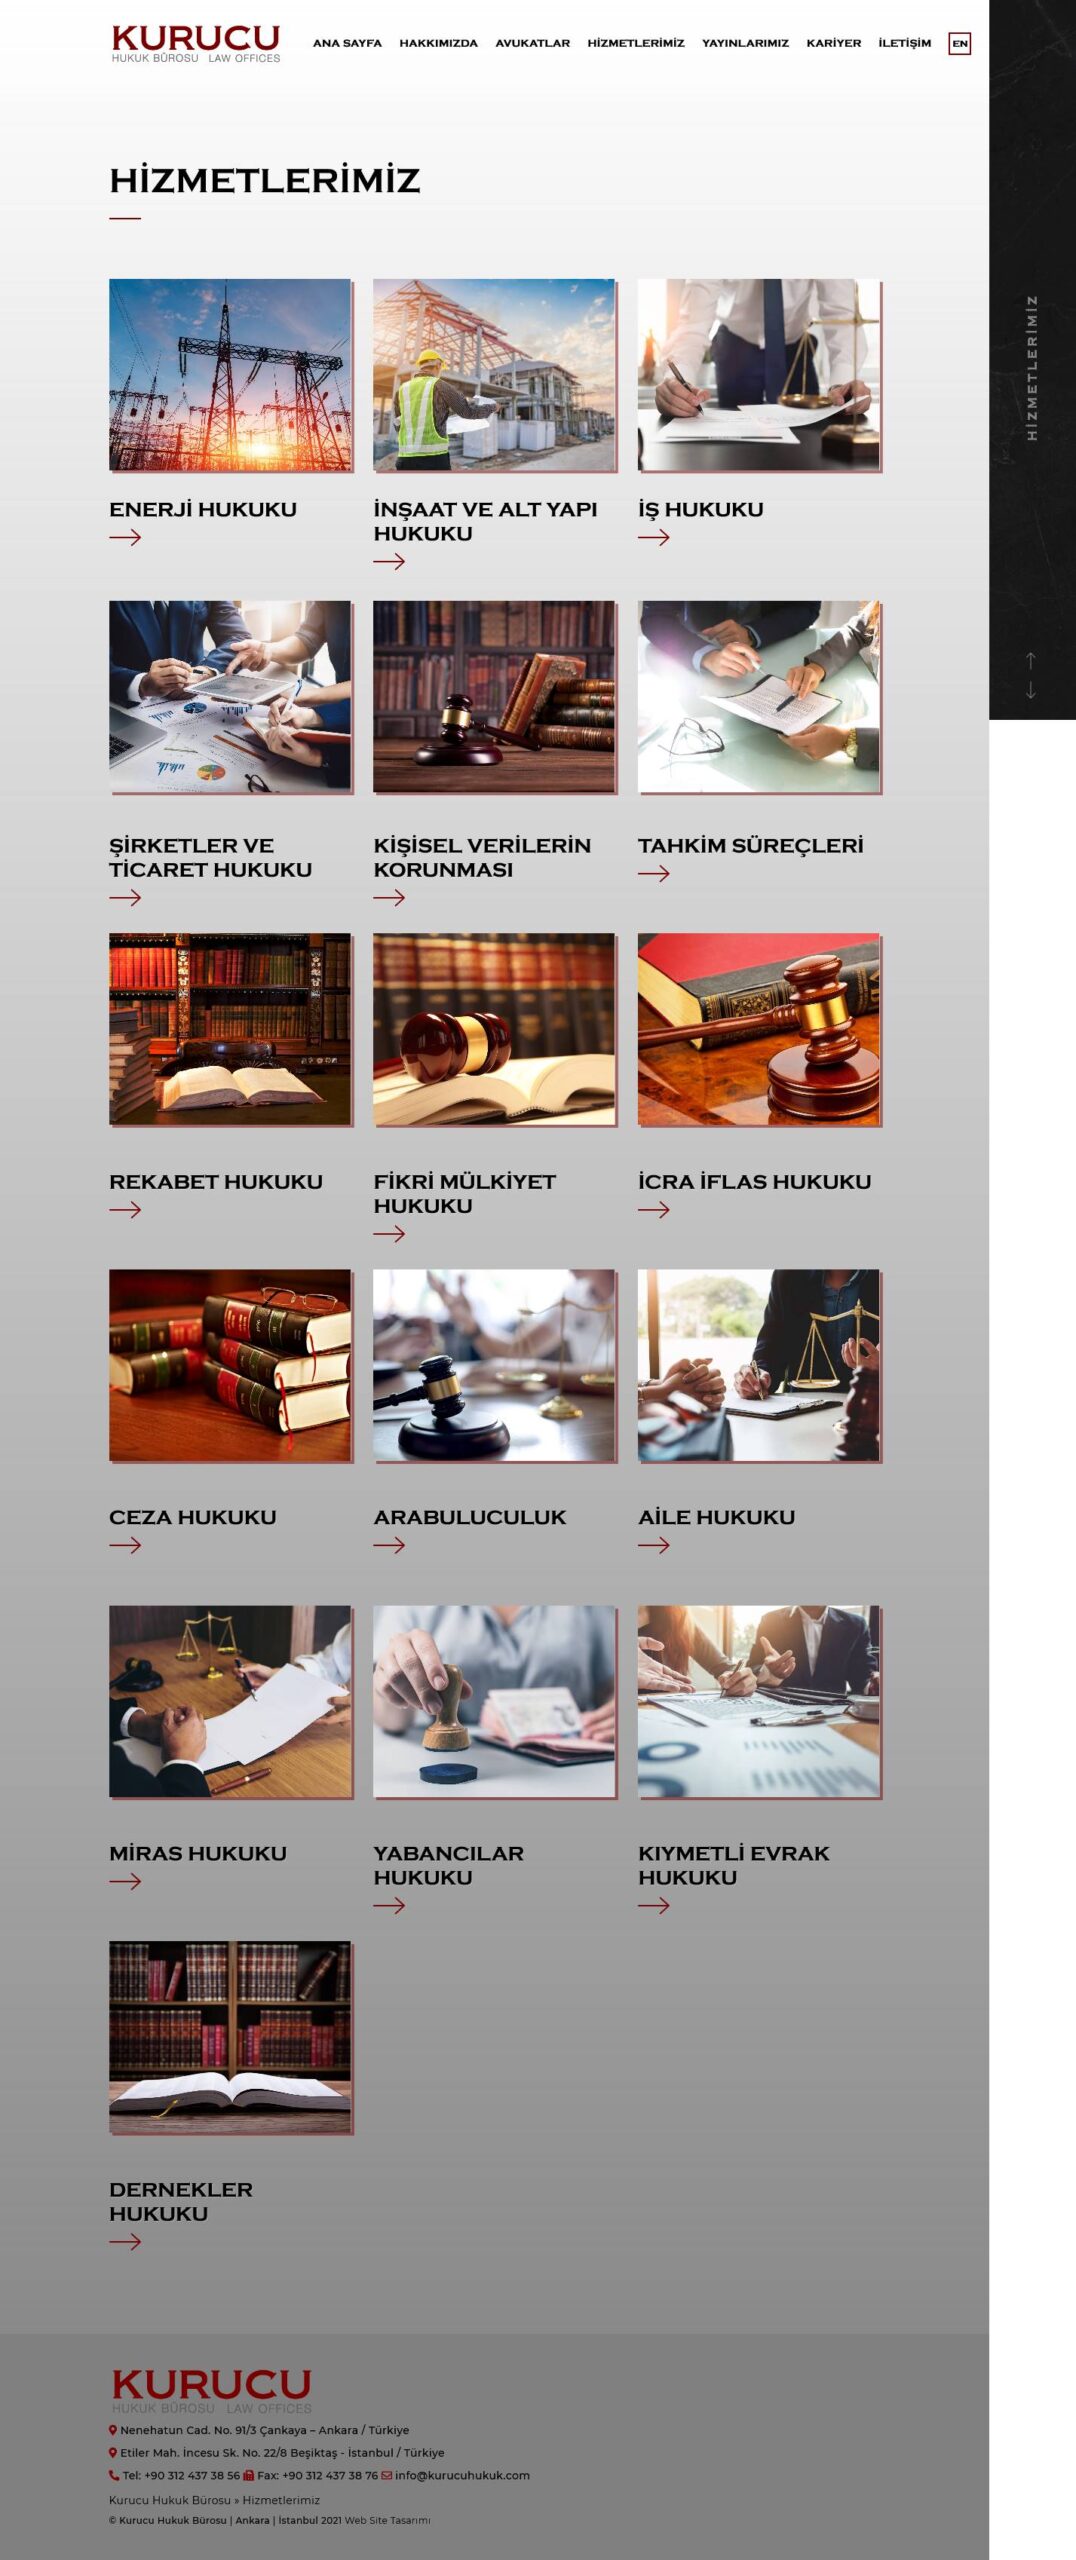 Kurucu Hukuk web sitesi hizmetler sayfası tasarımı